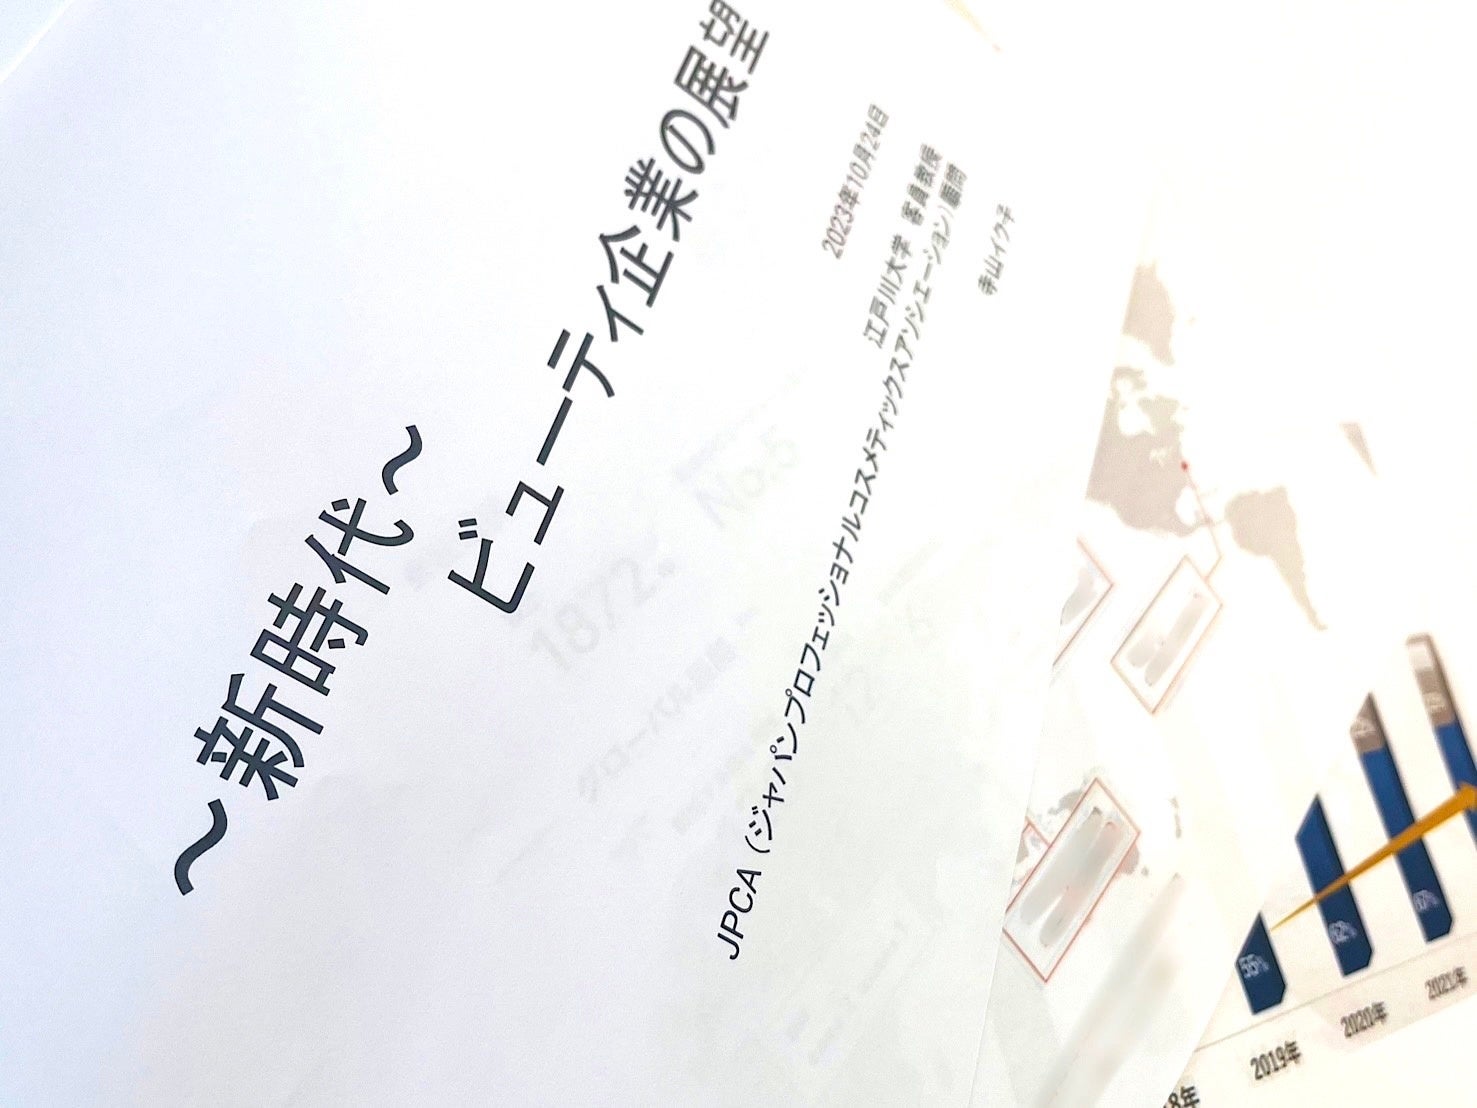 TIRTIR 新作メッシュファンデの“しなやかなツヤ感”と“パワーアップしたカバー力”をいち早く体験できるポップアップイベントを11月22日から@cosme TOKYOにて期間限定開催！